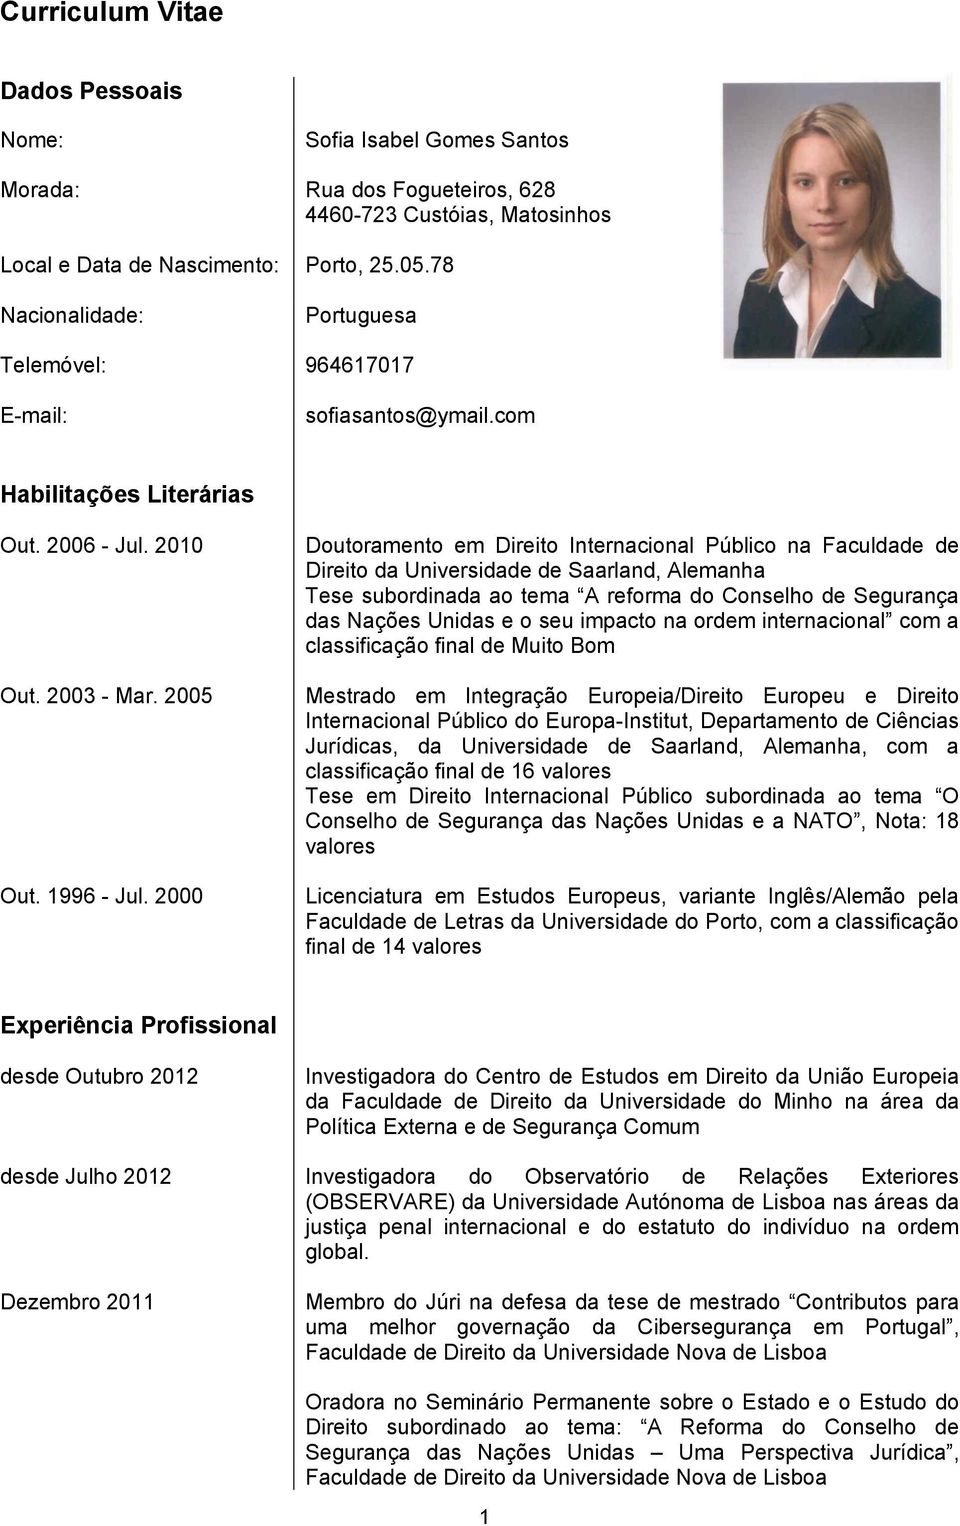 2000 Doutoramento em Direito Internacional Público na Faculdade de Direito da Universidade de Saarland, Alemanha Tese subordinada ao tema A reforma do Conselho de Segurança das Nações Unidas e o seu